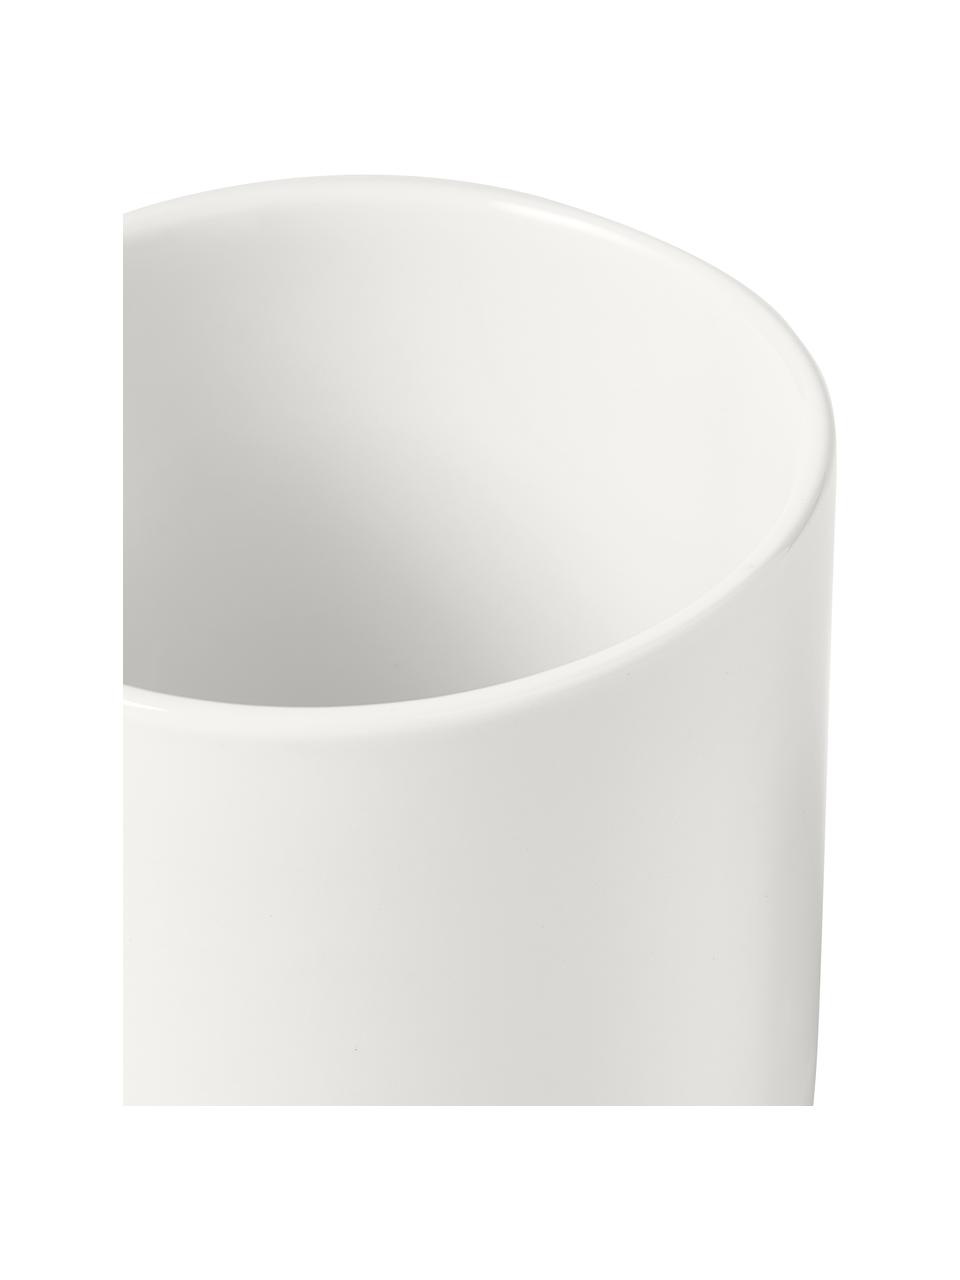 Tazza caffè in porcellana Nessa 4 pz, Porcellana a pasta dura di alta qualità, Bianco, Ø 8 x Alt. 10 cm